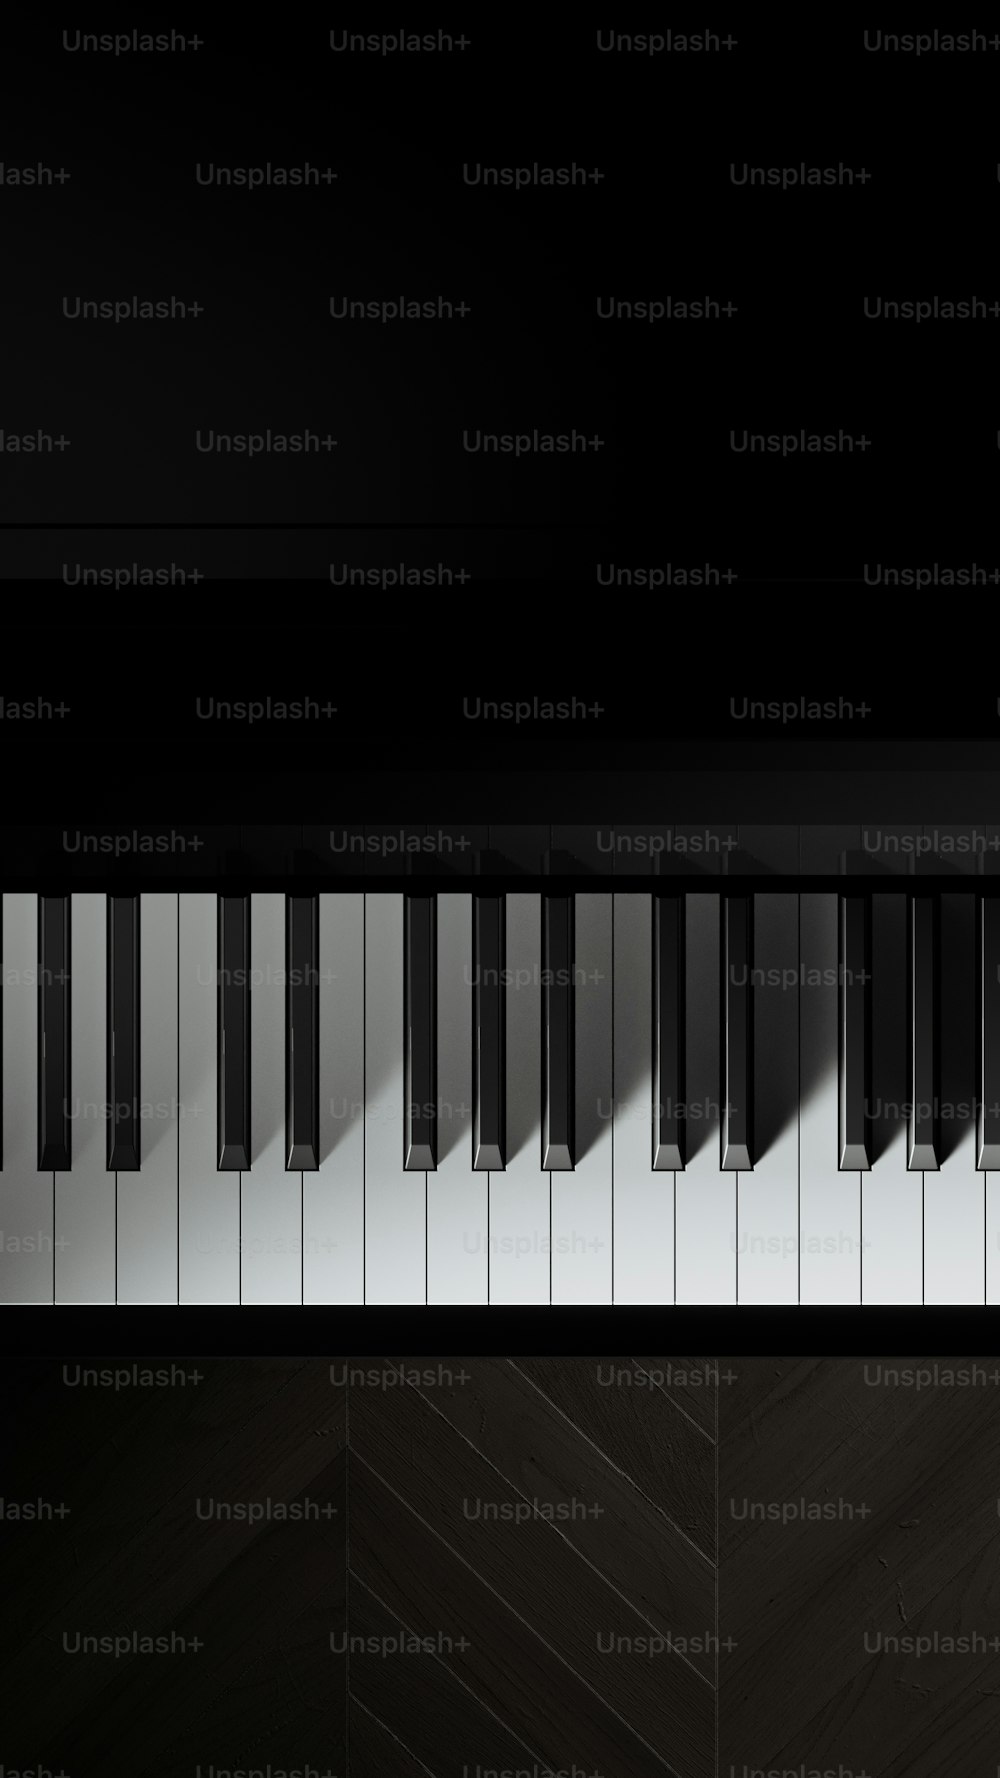 피아노의 흑백 사진